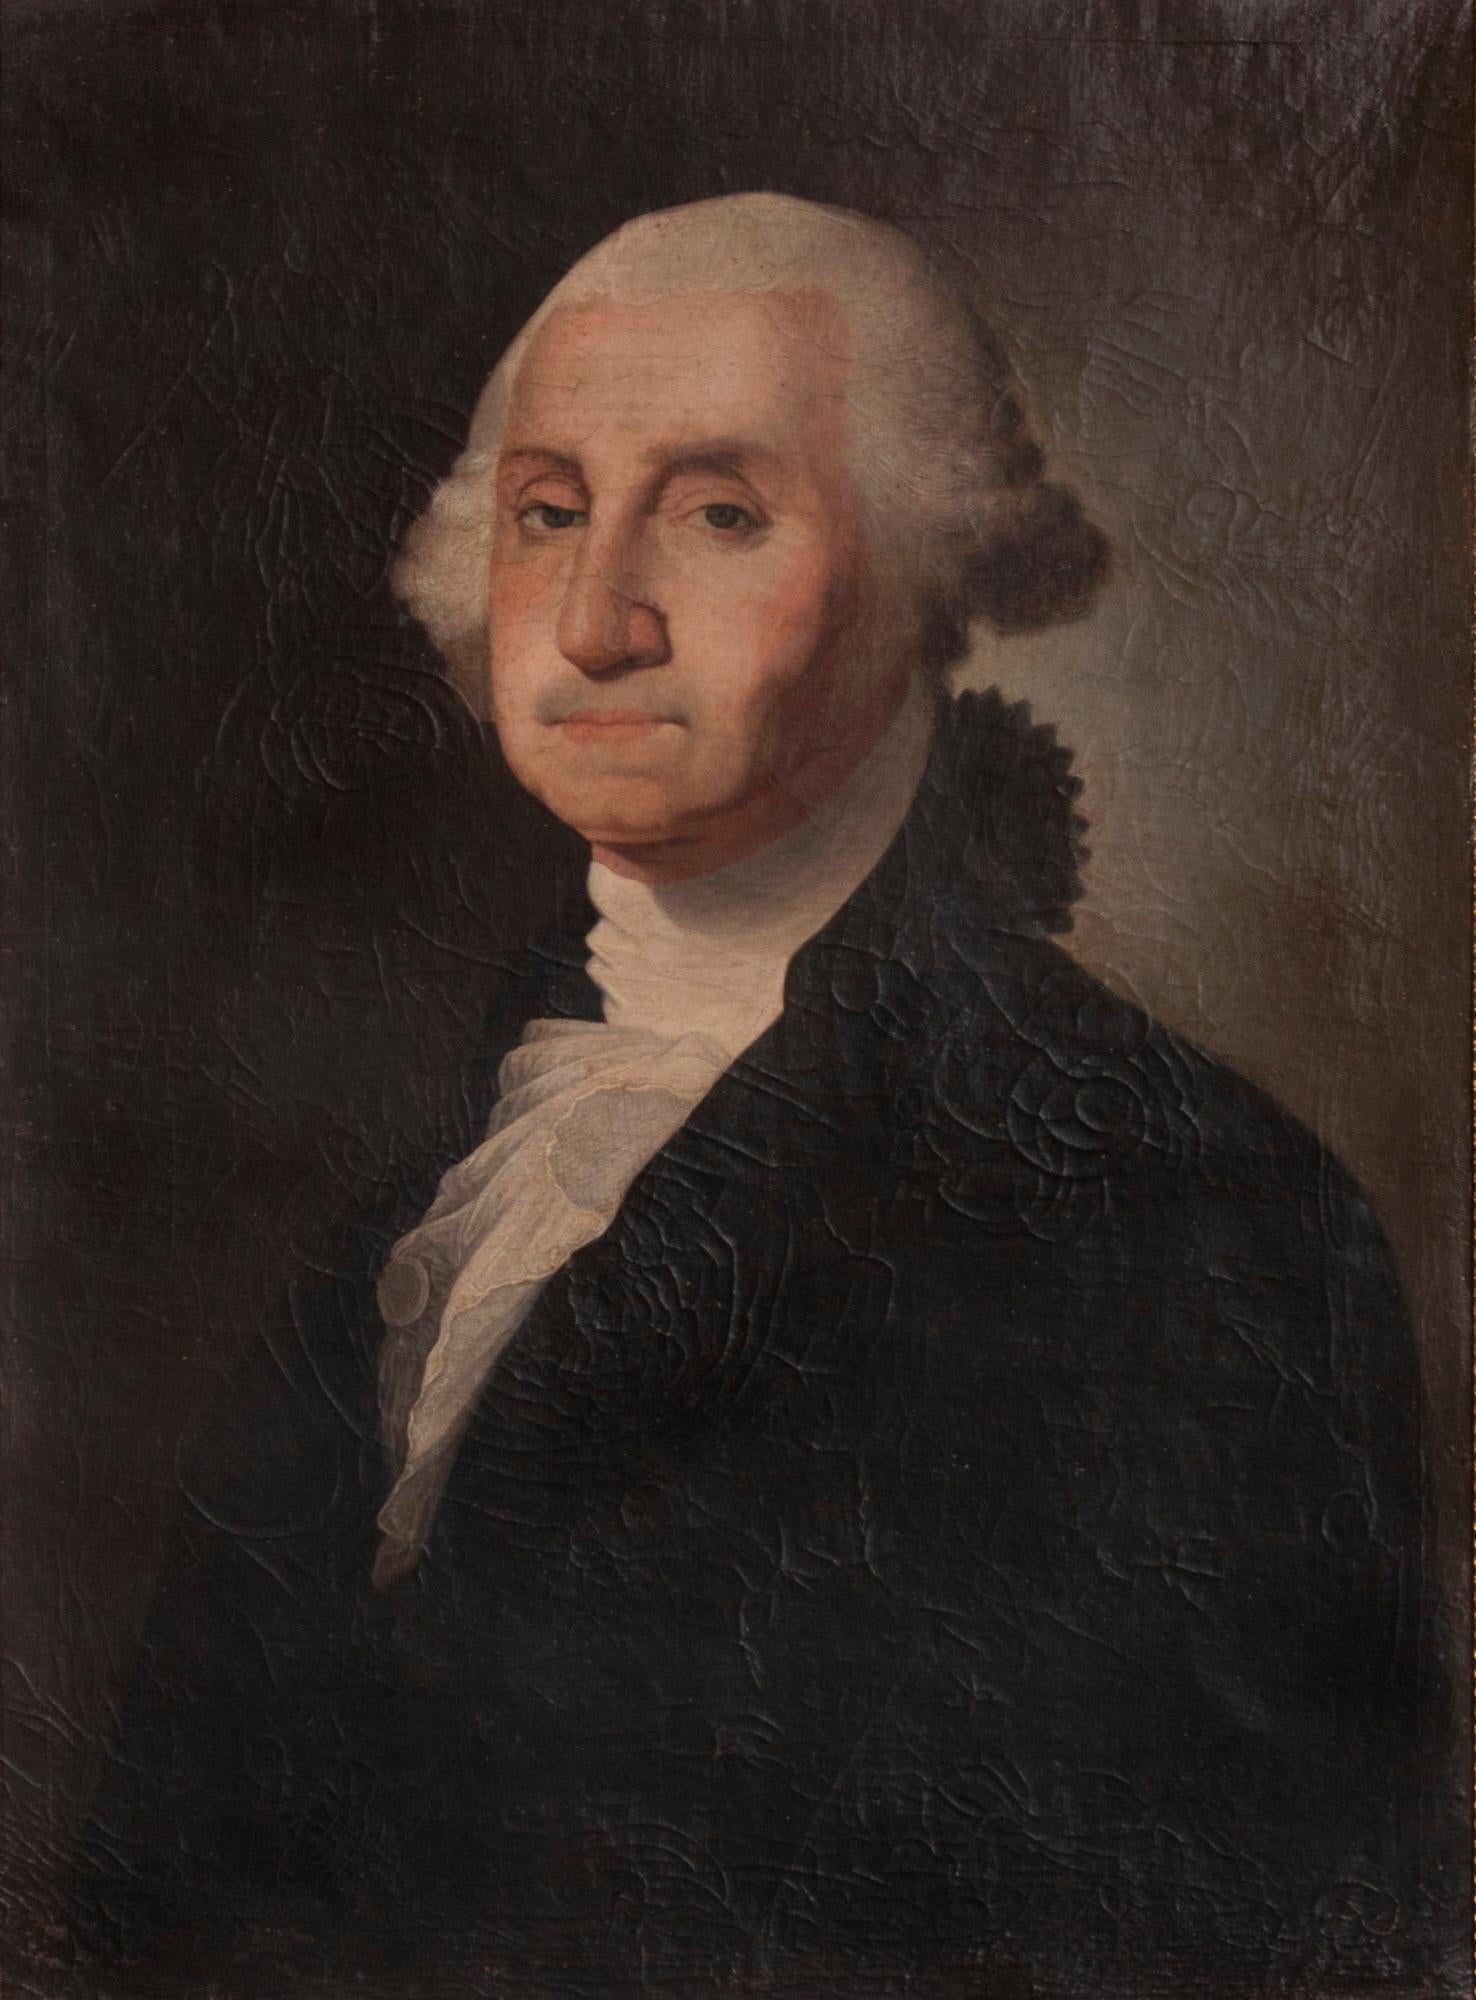 Gemälde von George Washington in Öl auf Leinwand, ein frühes Beispiel, um 1850 entstanden, eine sehr ansprechende und gut ausgeführte Kopie von Gilbert Stuarts Athenaeum-Porträt

Porträt von George Washington in Öl auf Leinwand, gemalt um 1850.